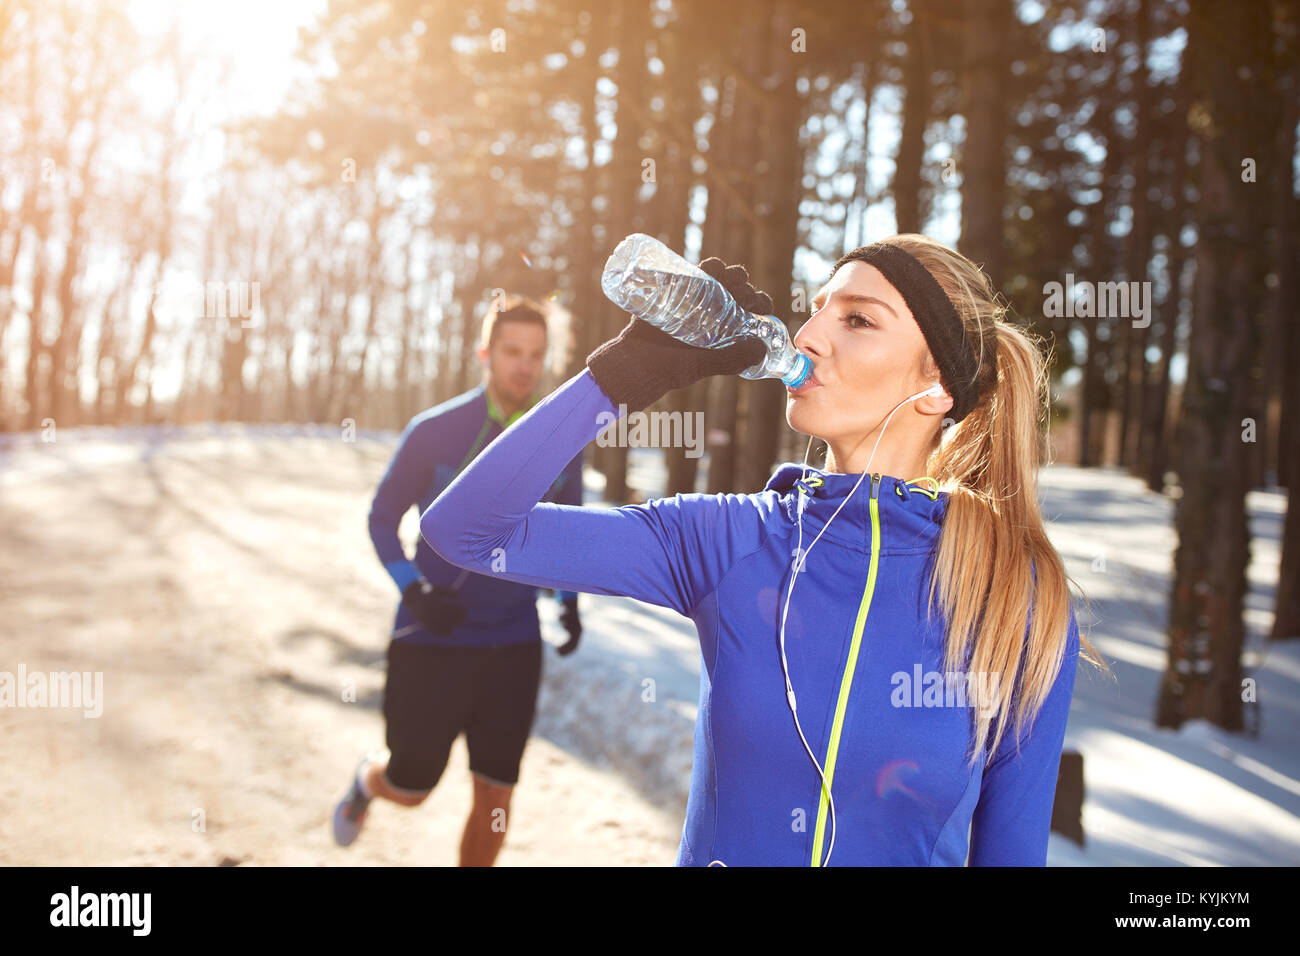 Grande sportive sur l'entraînement physique de l'eau potable dans la nature enneigée Banque D'Images